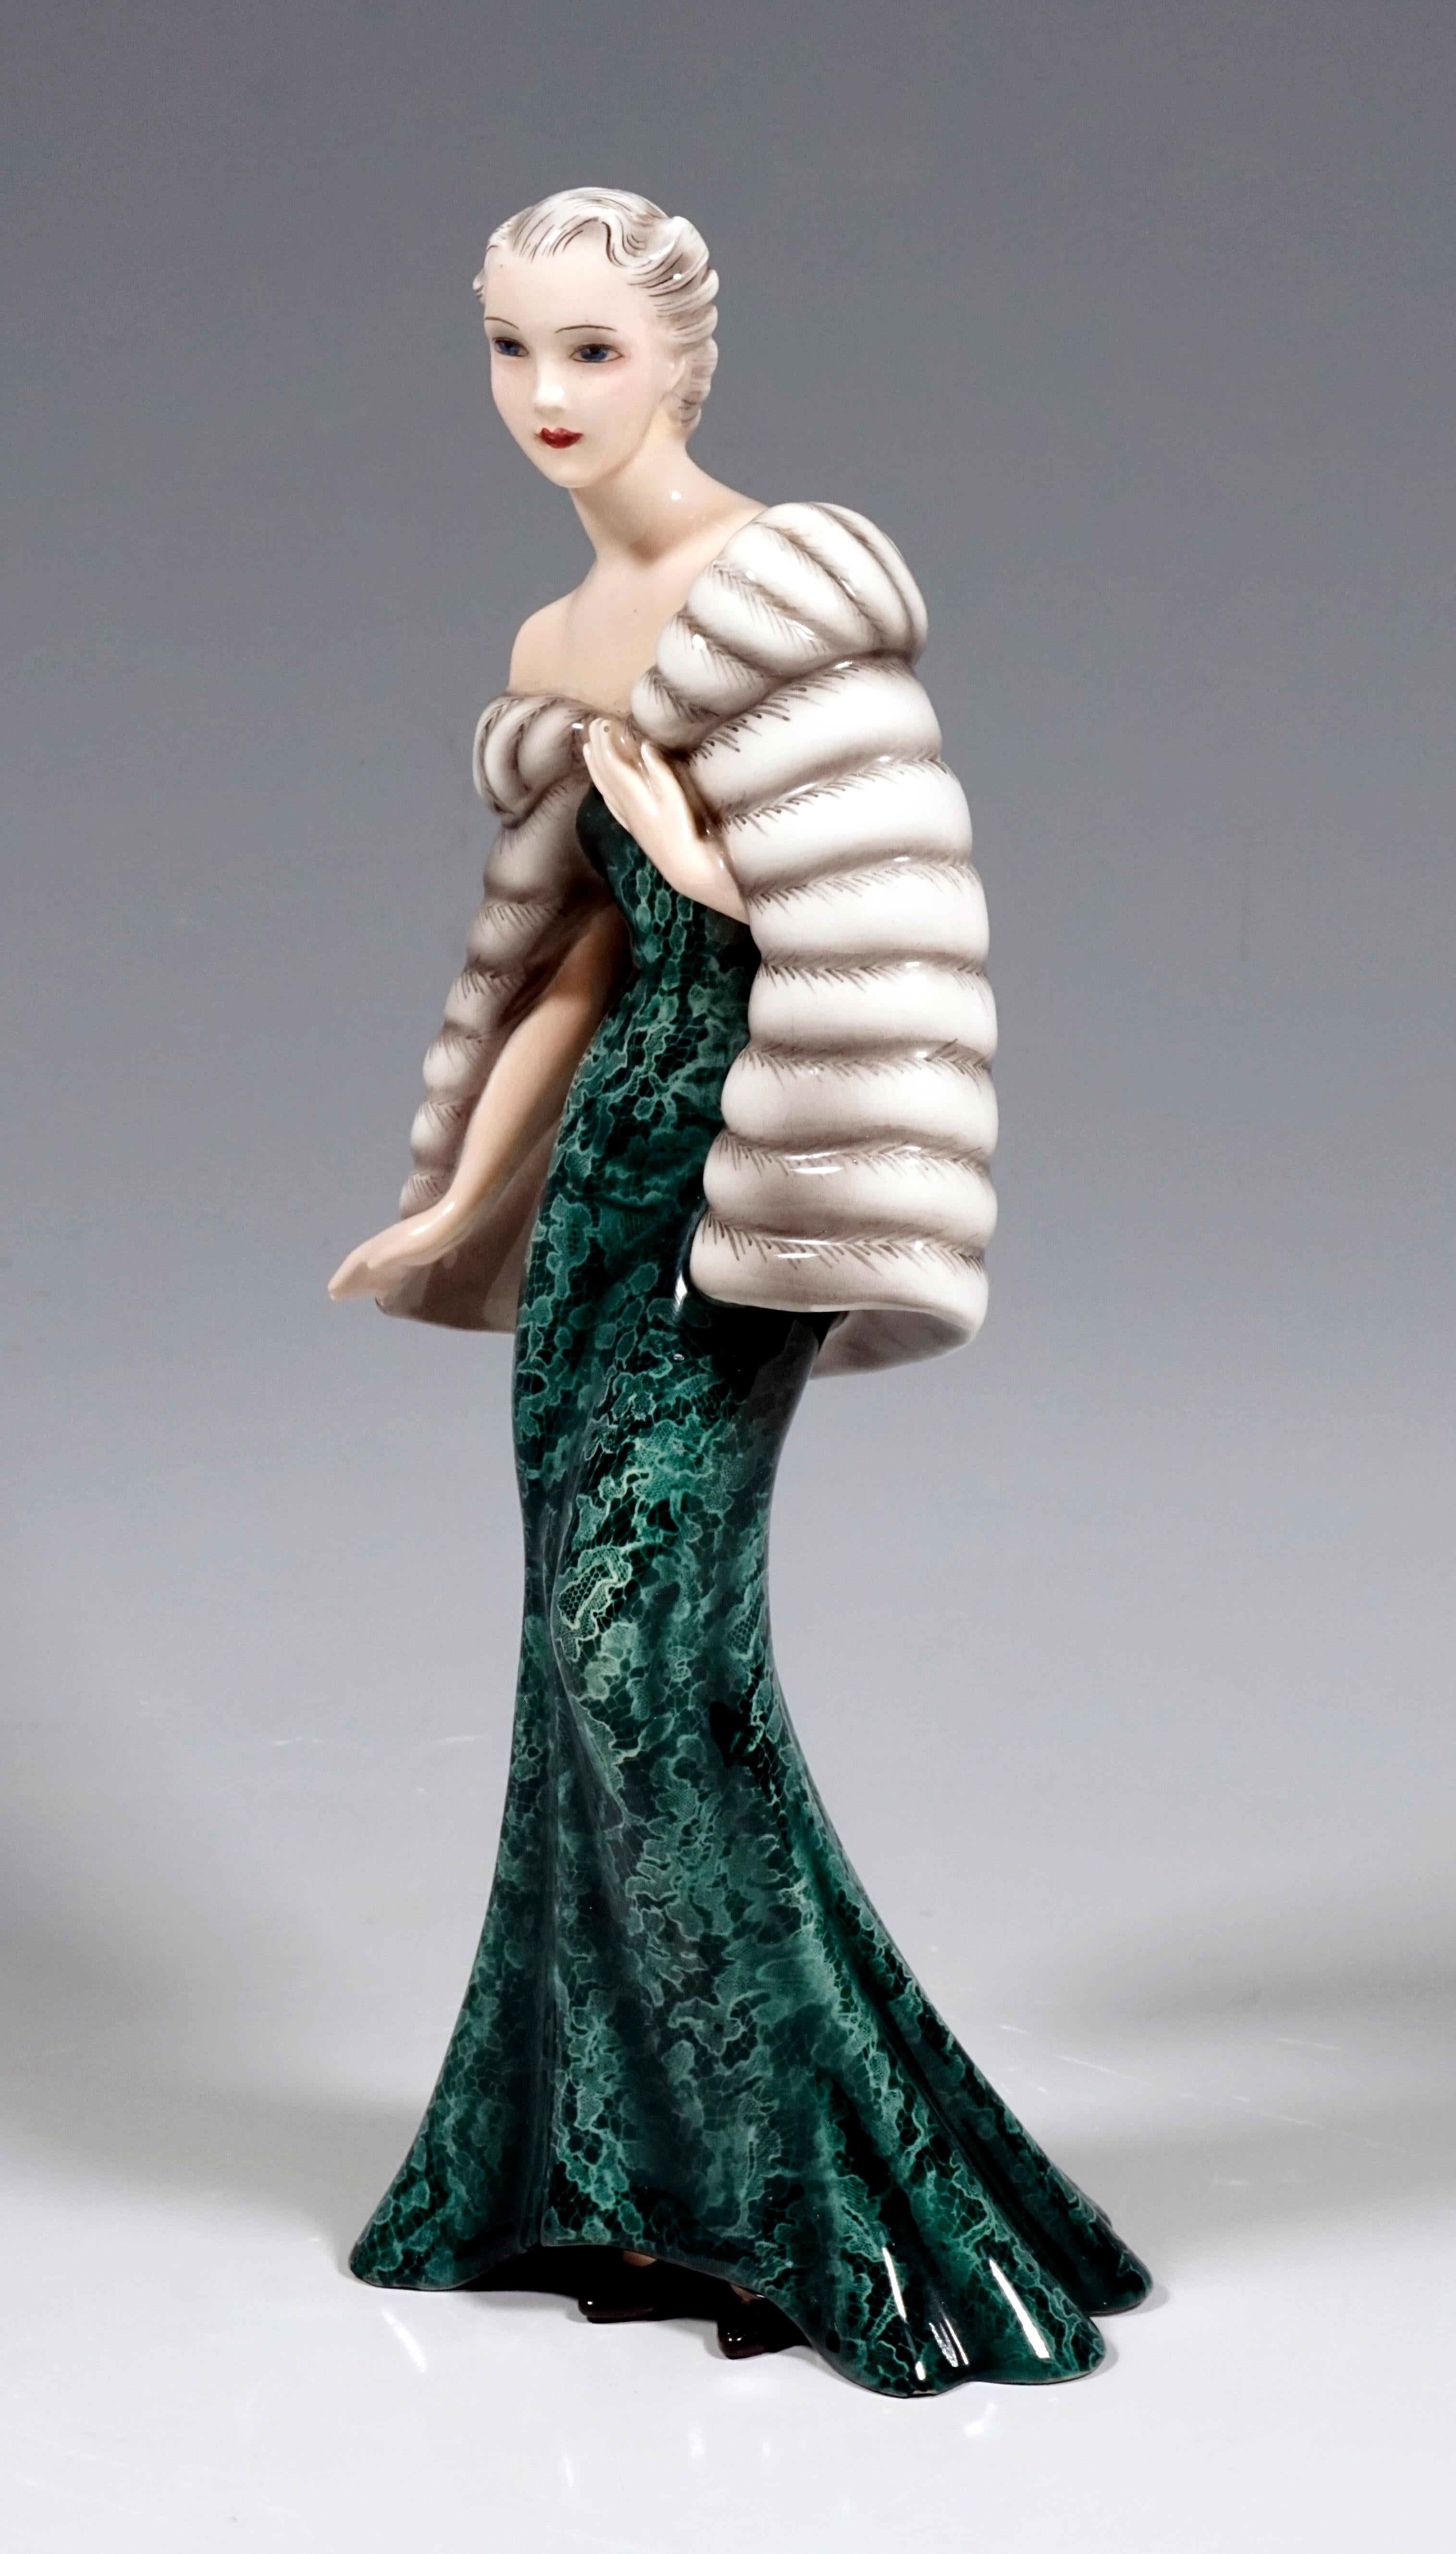 Austrian Goldscheider Vienna Figurine 'Evening Dress' by Claire Herczeg, circa 1938